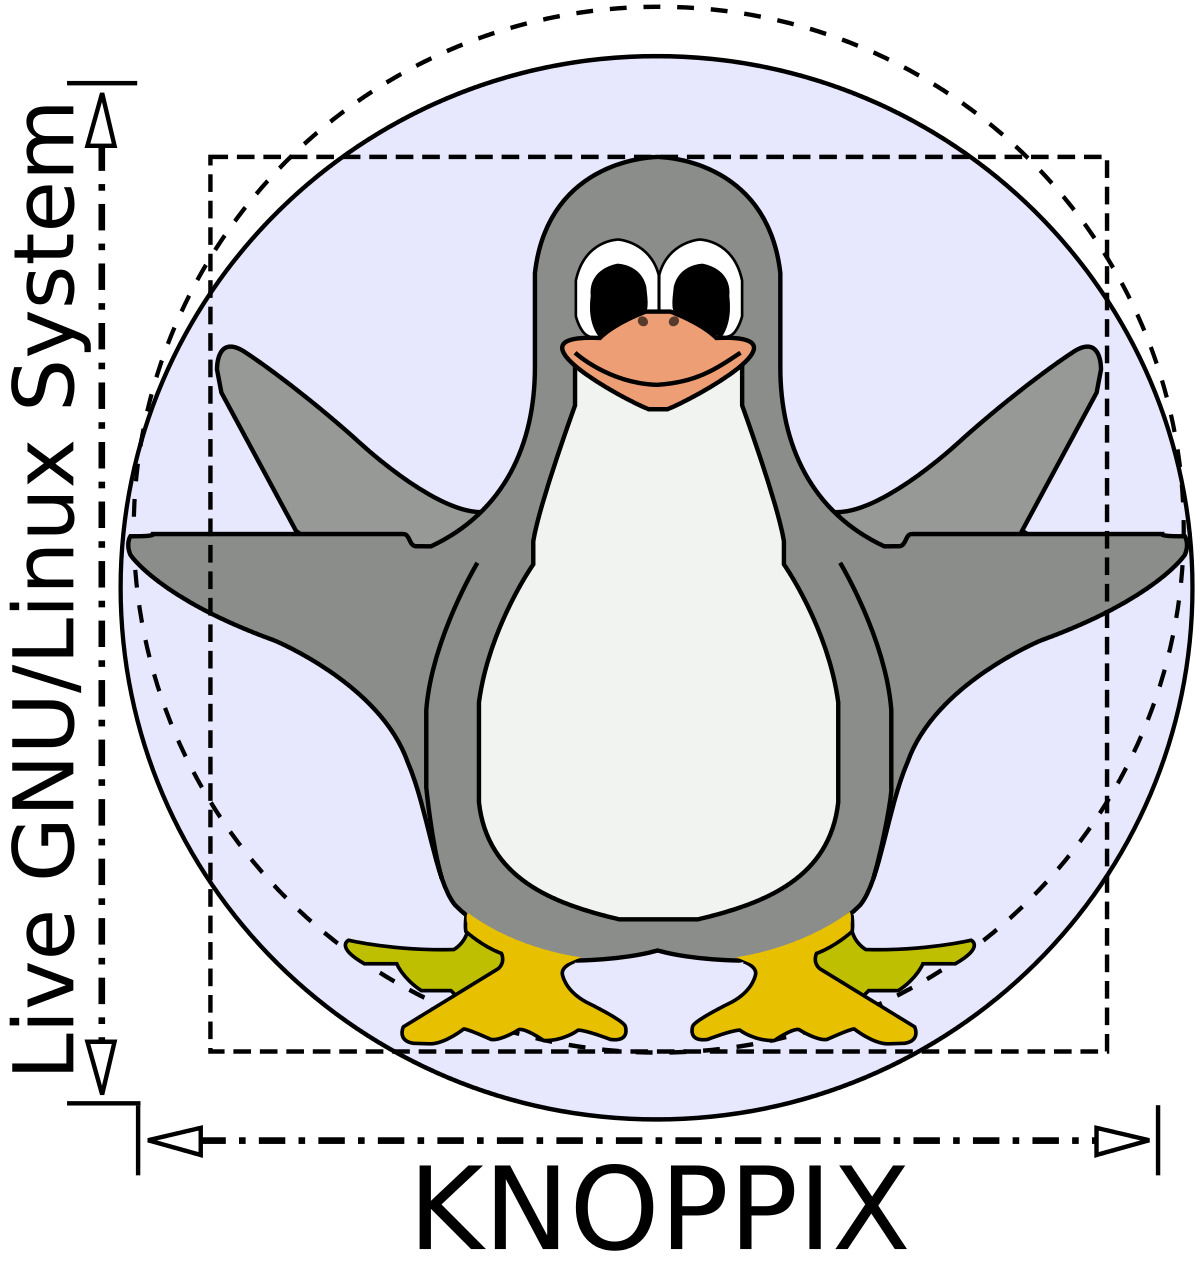 Knoppix Linux OS v8.6.1 16 GB USB  - The Original Live Operating System 